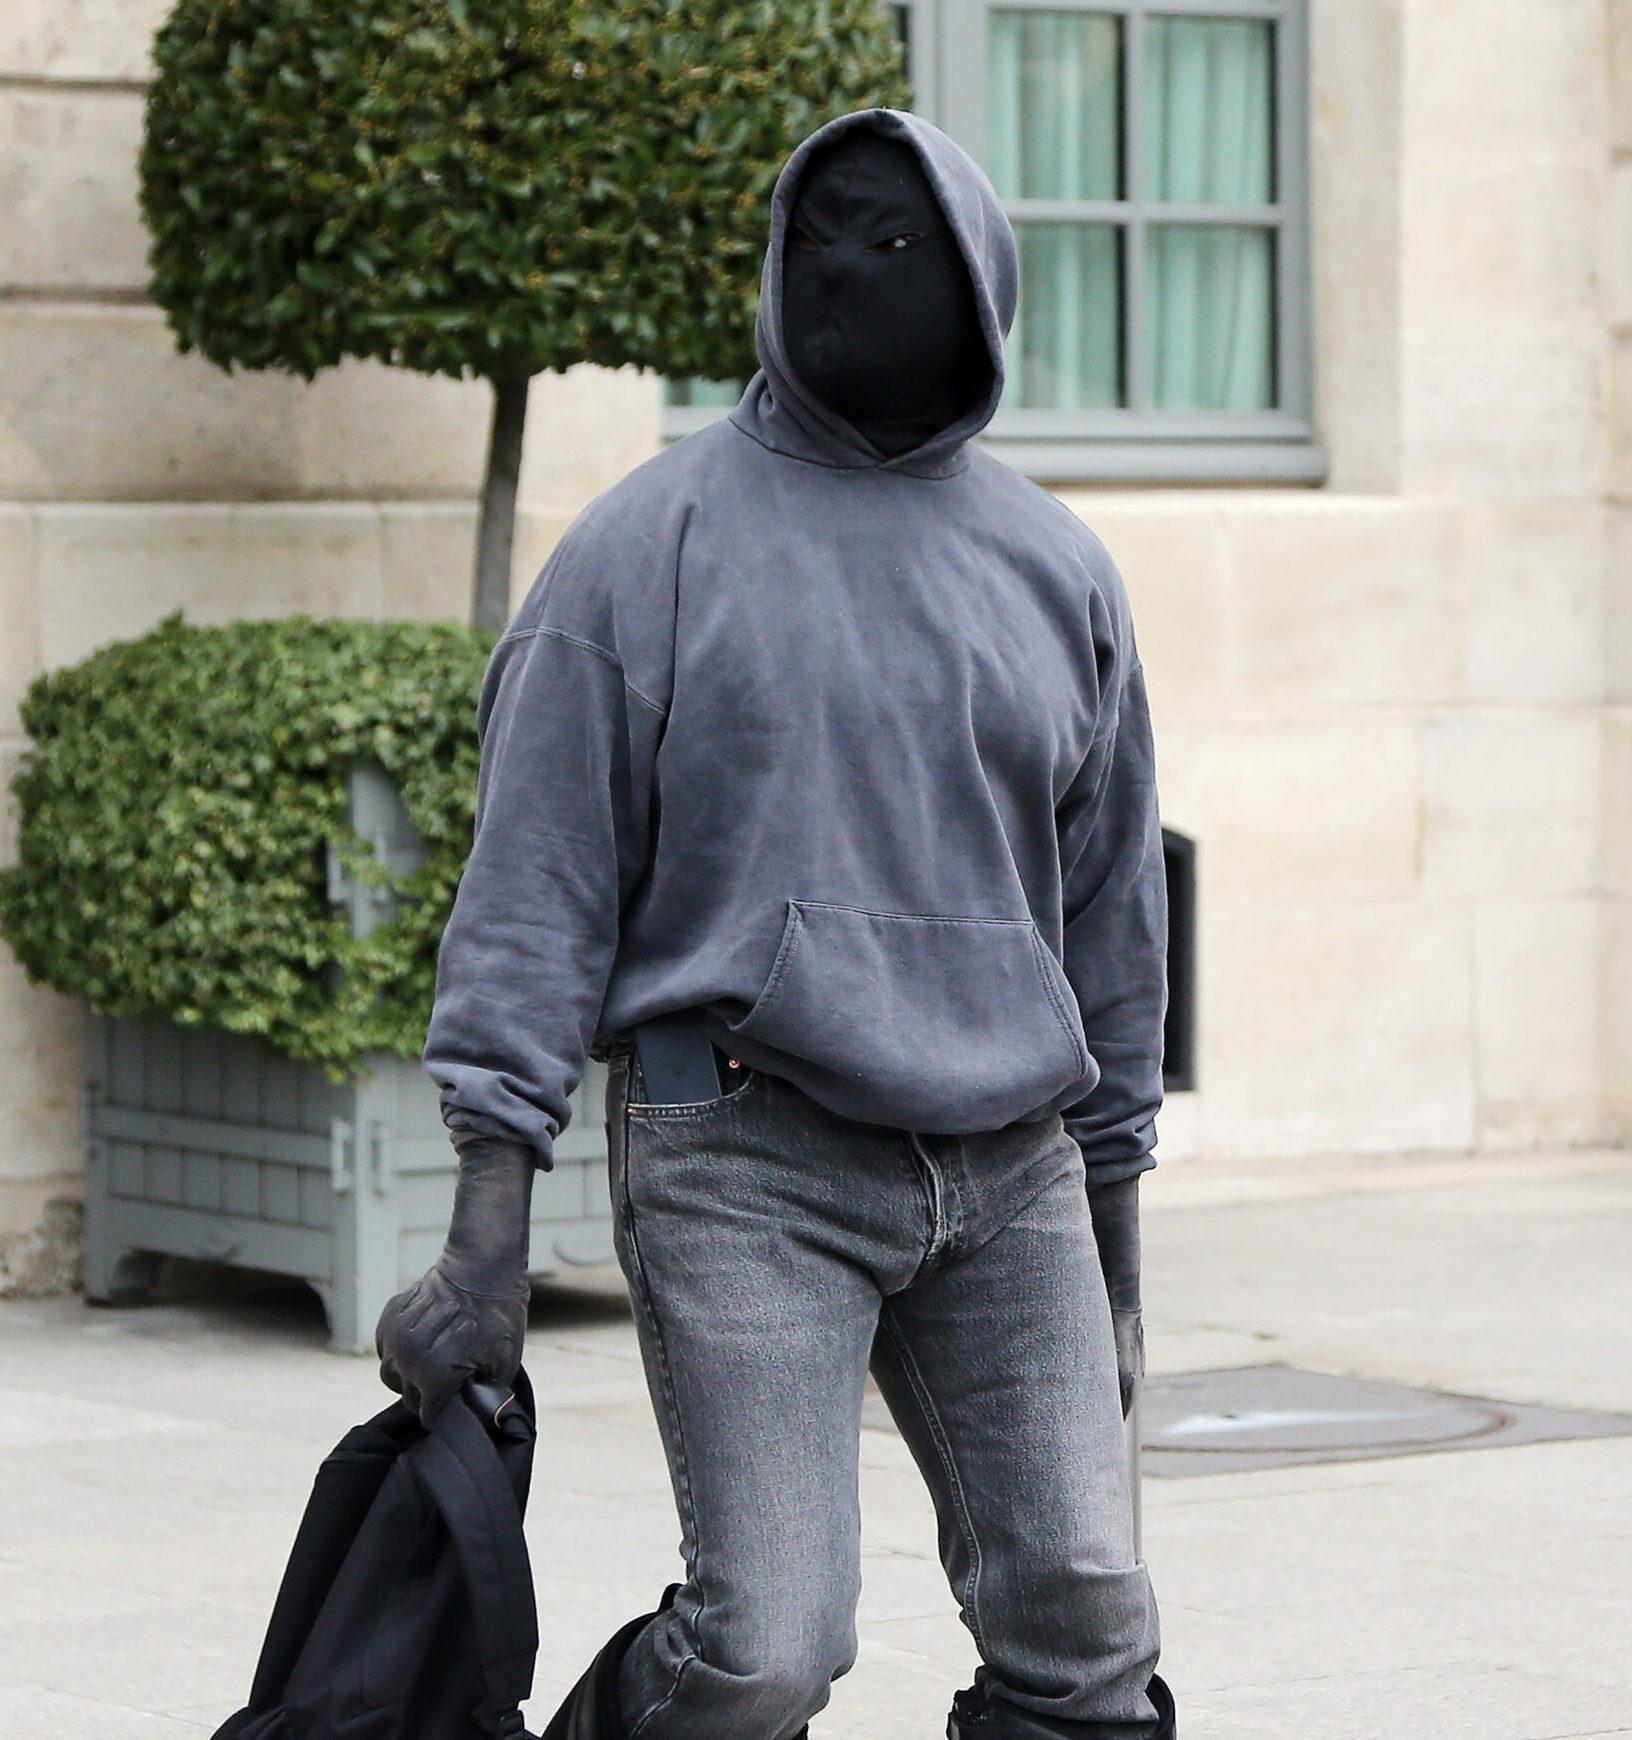 Kanye West at the Ritz hotel during Paris Fashion Week